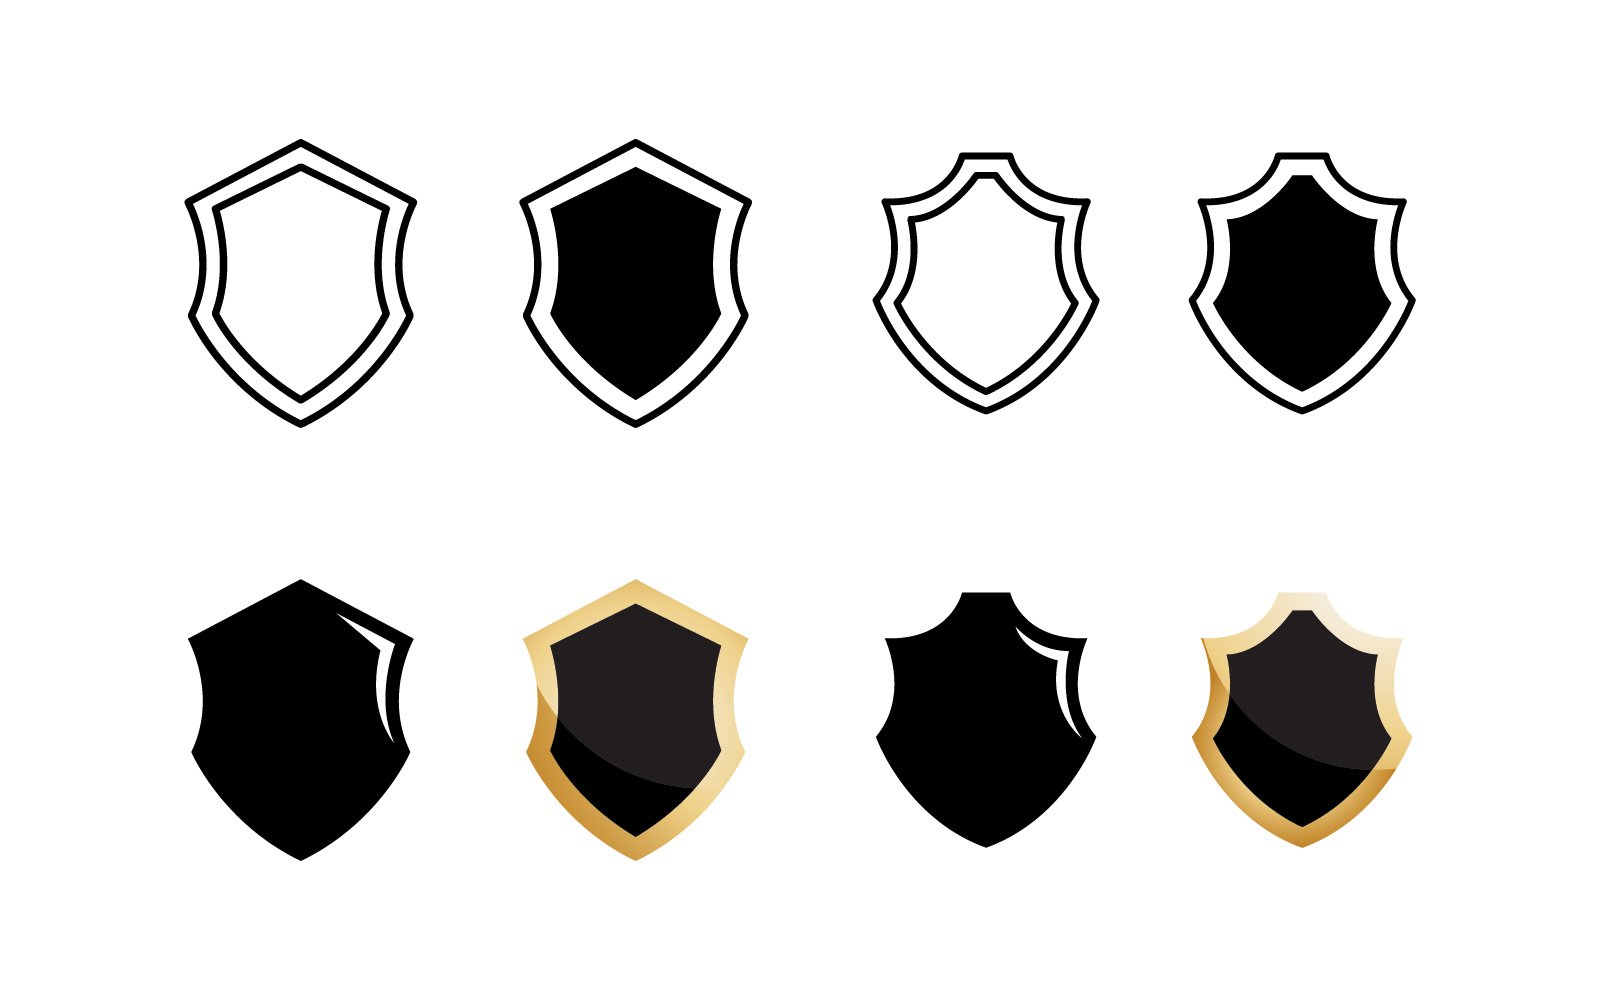 Shield or badges symbols icon set  V6